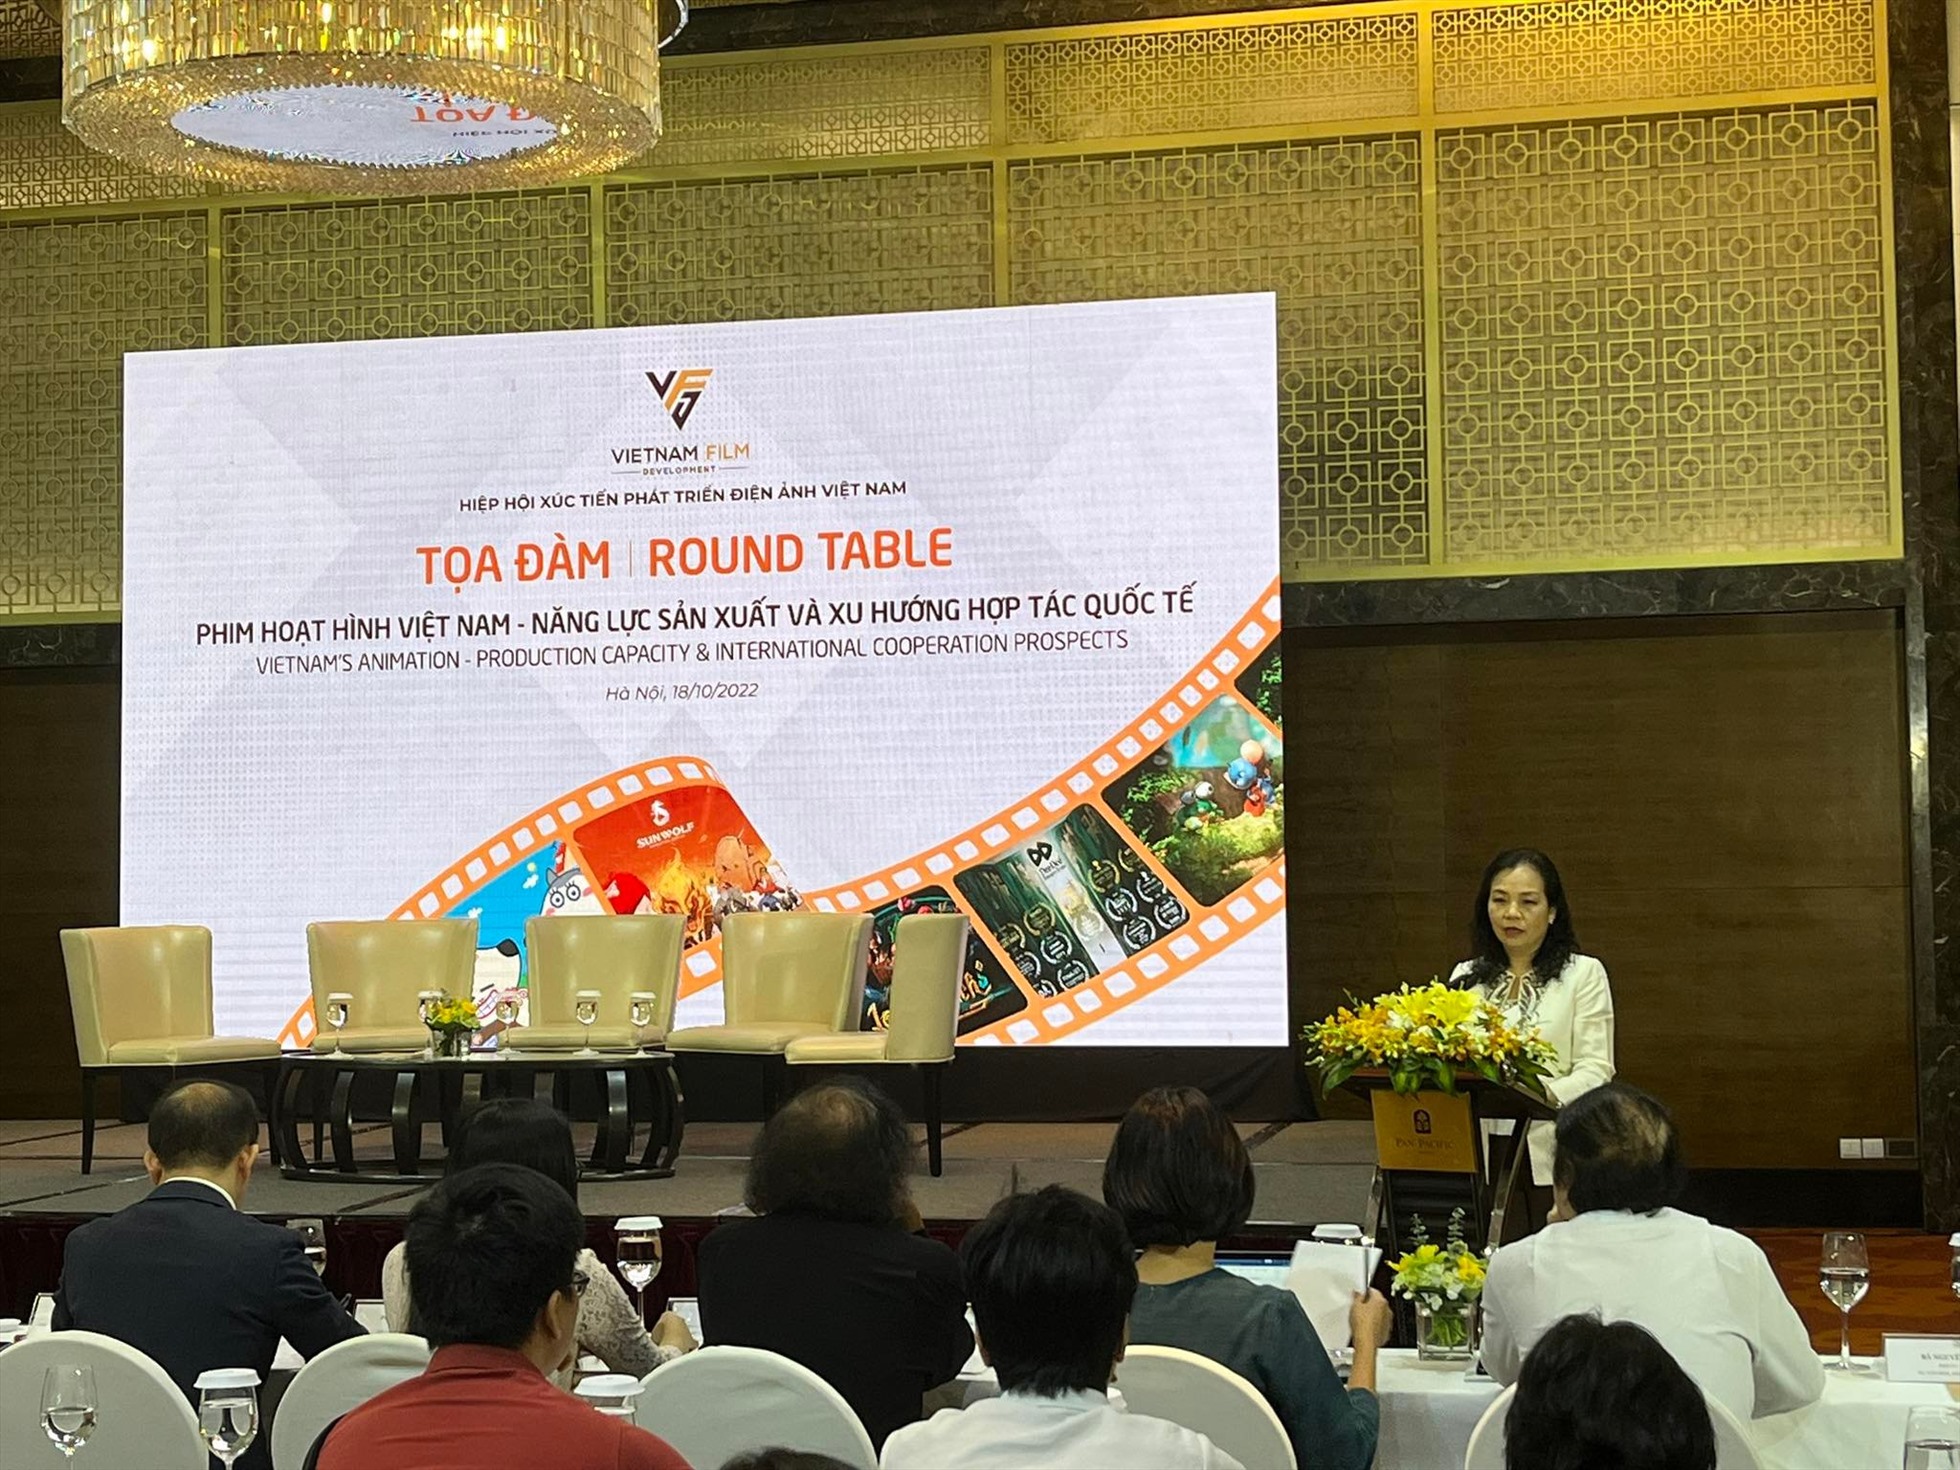 Bà Ngô Phương Lan- Chủ tịch Hiệp hội Xúc tiến phát triển Điện ảnh Việt Nam phát biểu khai mạc tọa đàm. Ảnh: Huyền Chi